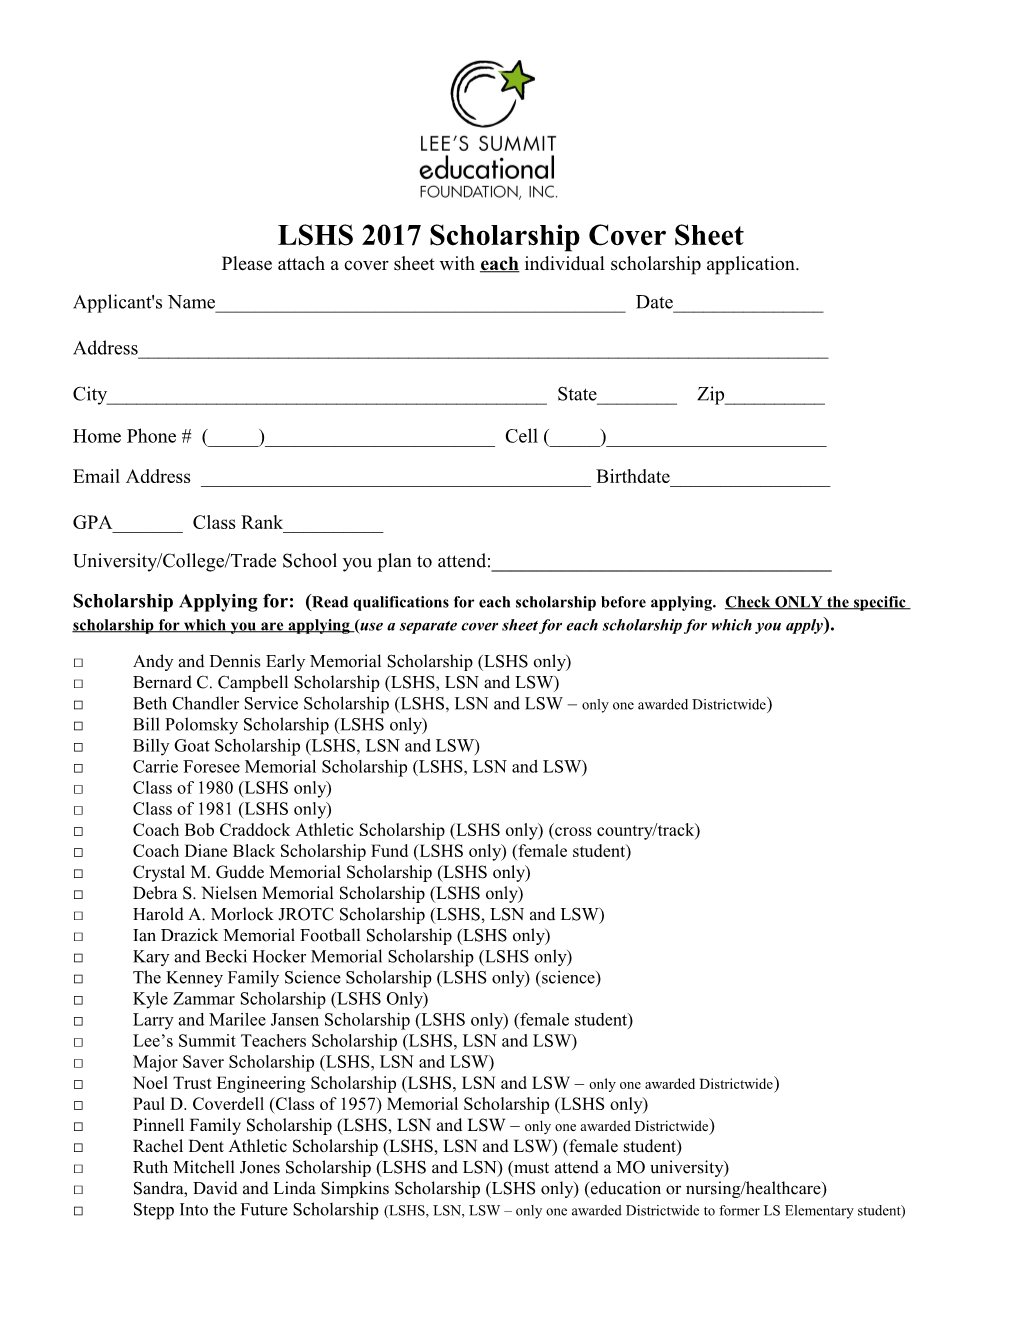 LSHS 2017 Scholarship Cover Sheet